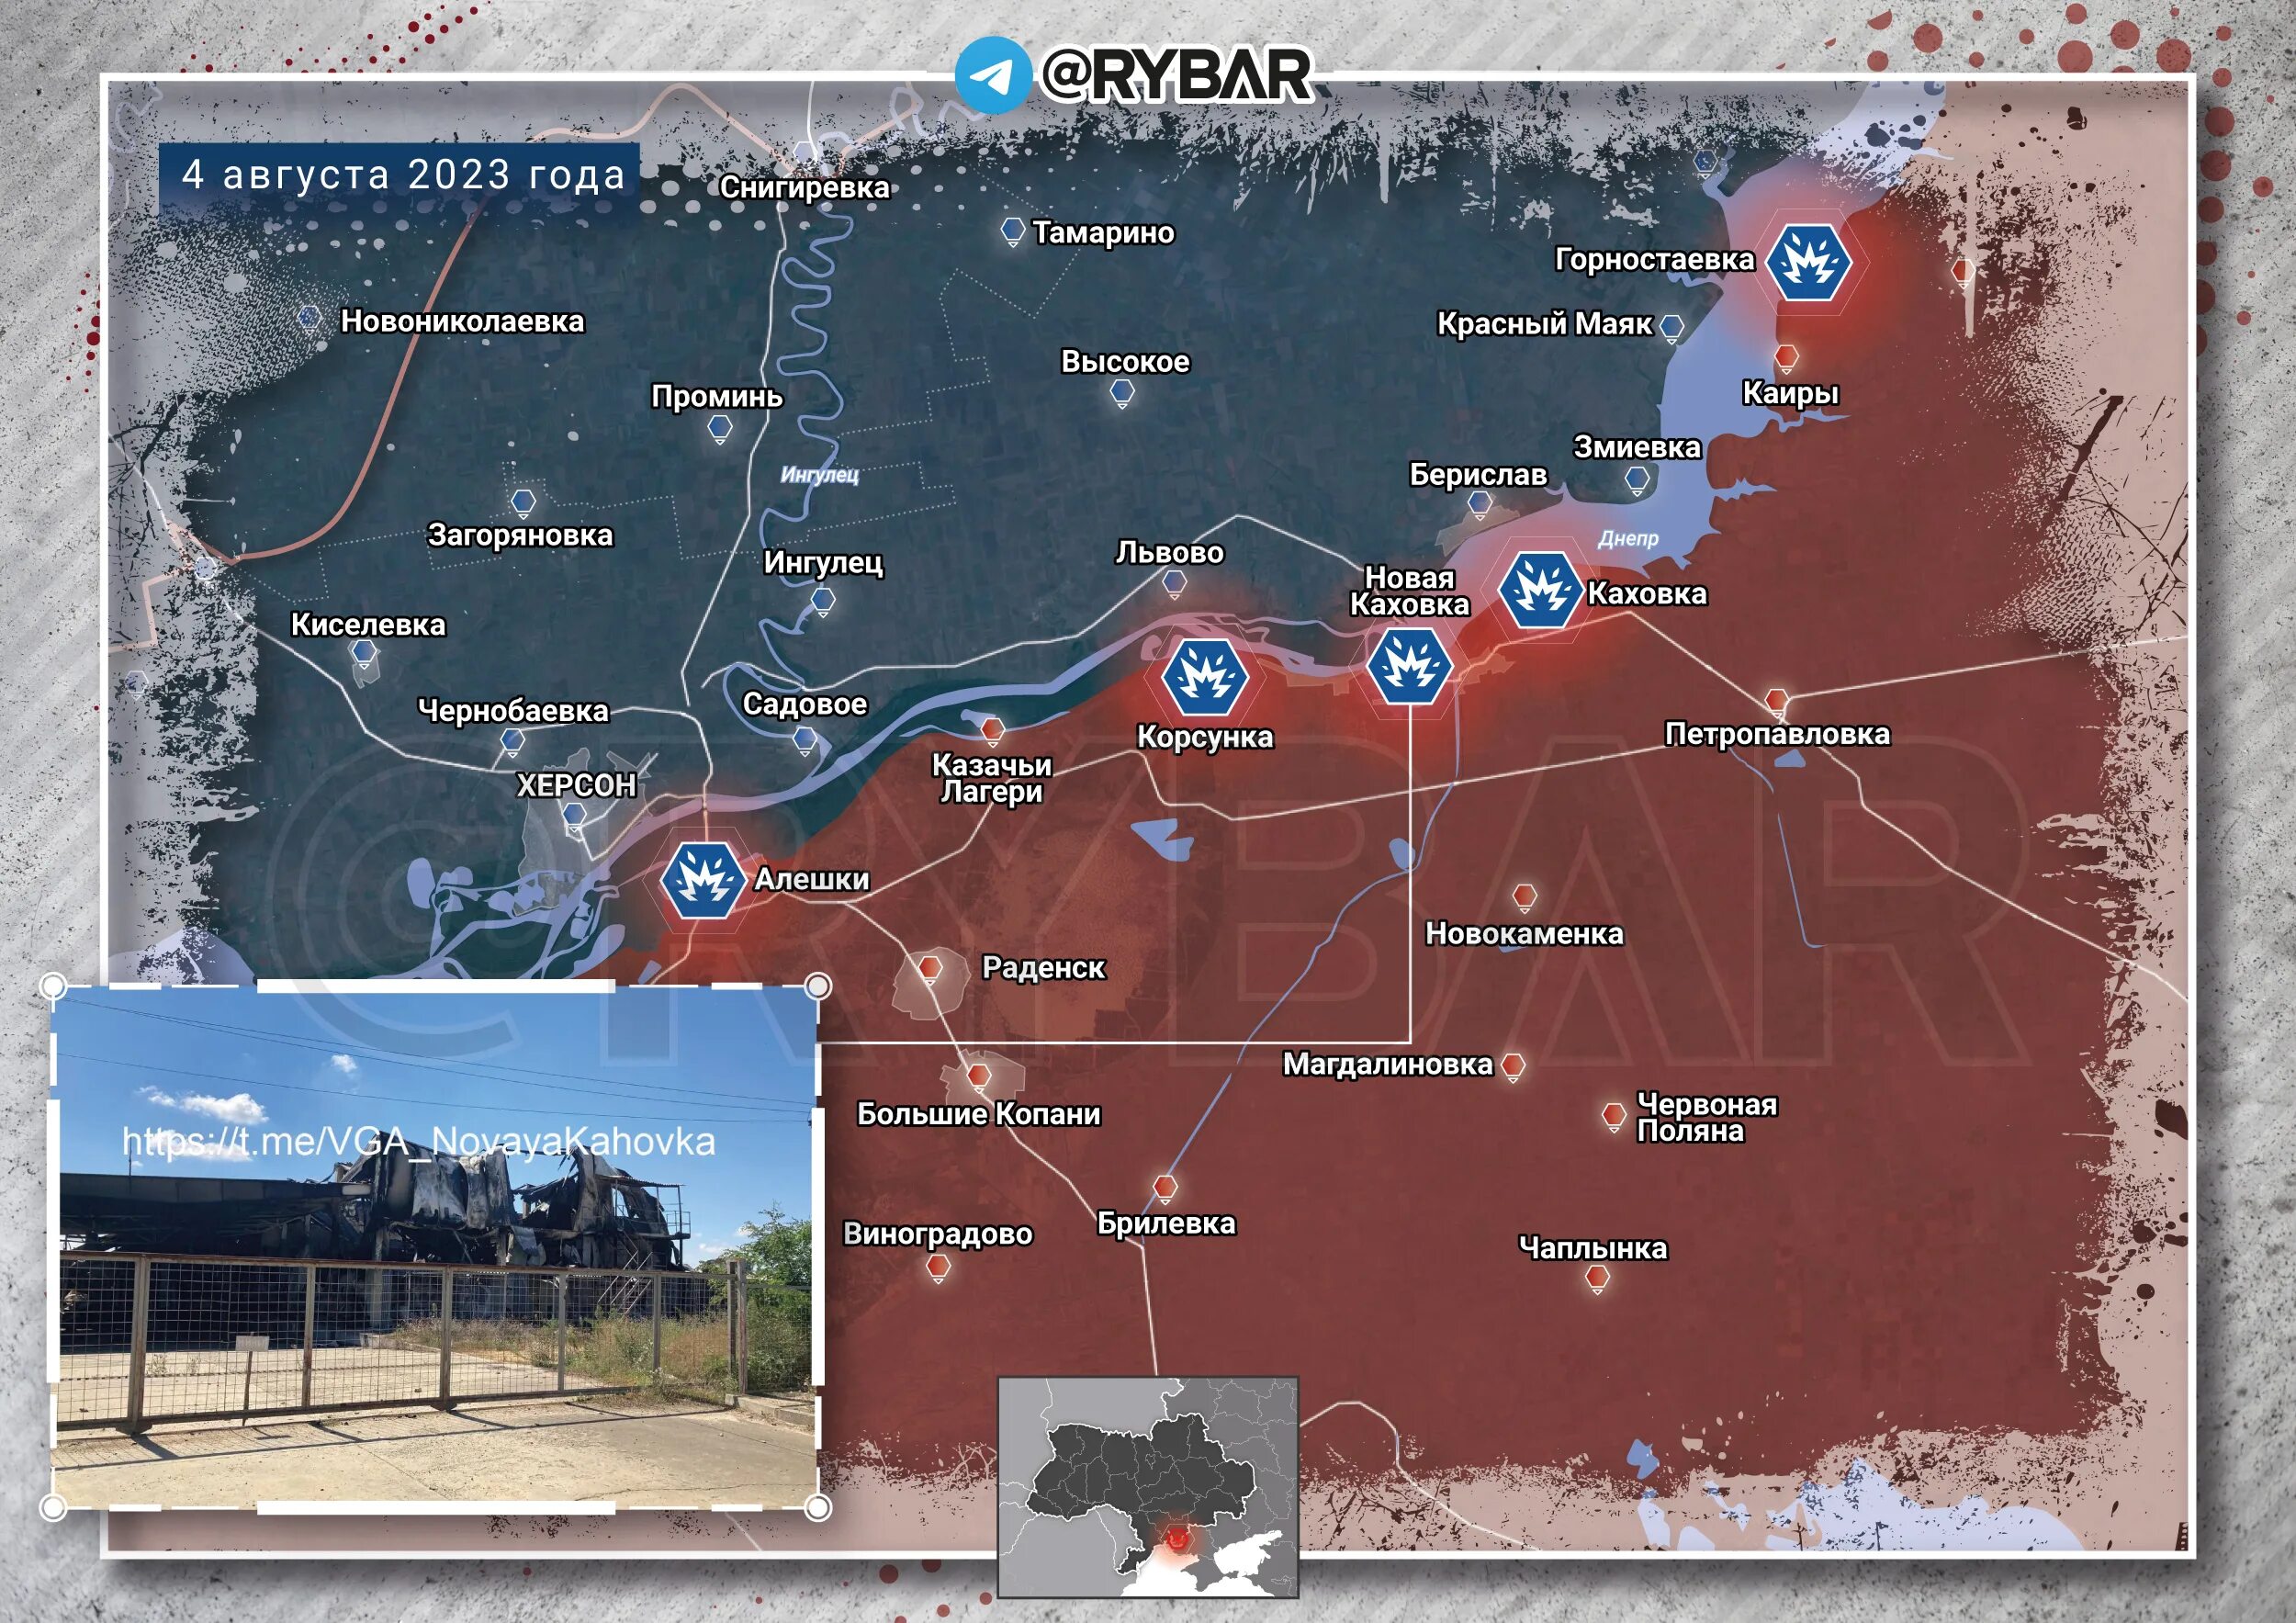 Операция в херсонской области. Боевые действия. Каховка на карте боевых действий. Карта боевых действий на Украине на 2023 год. Ситуация в Херсонской области сейчас.